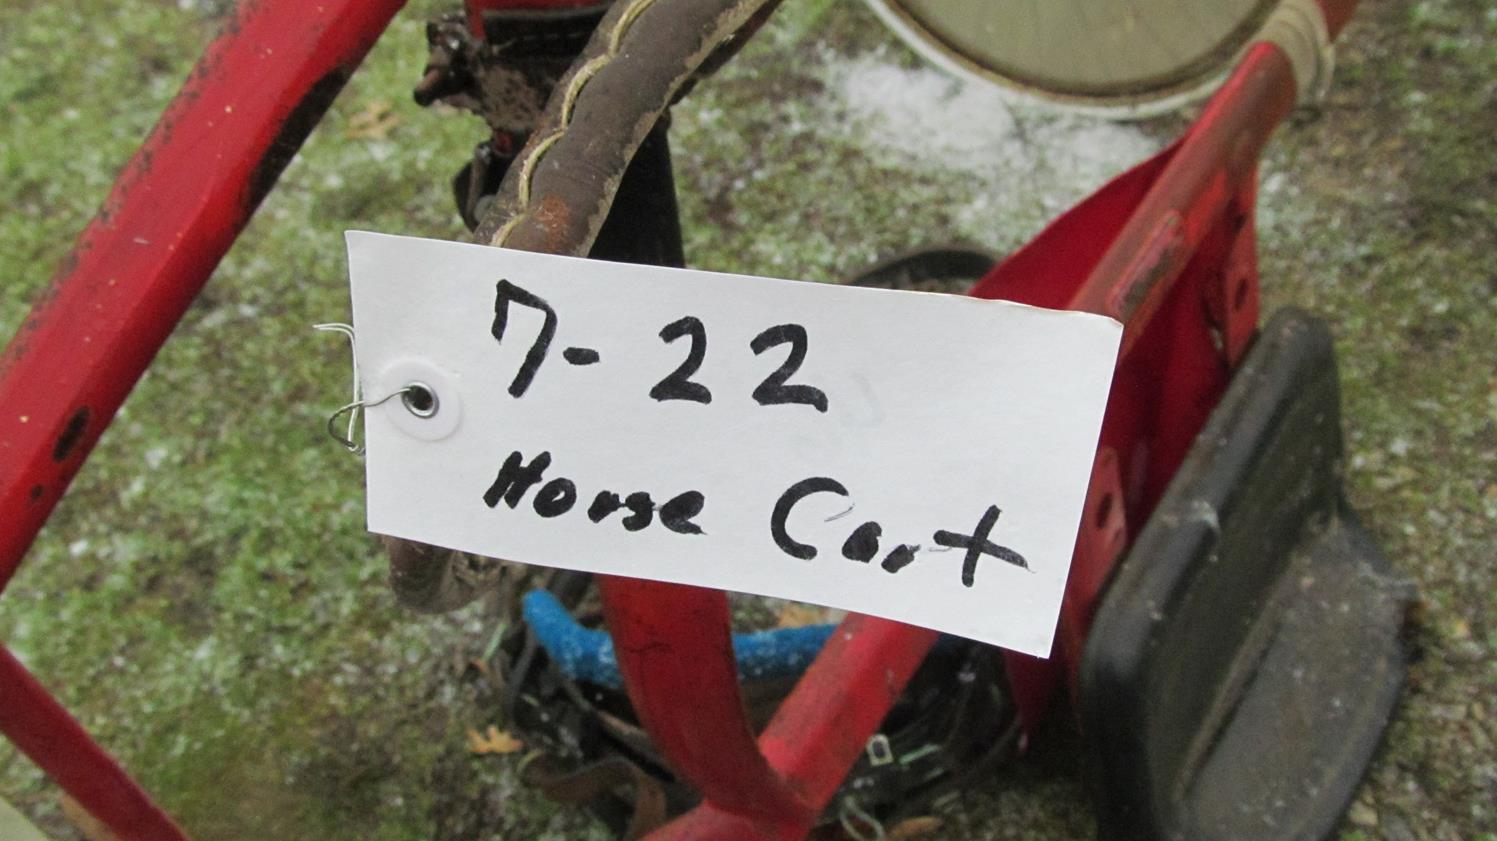 7-22 - HORSE CART